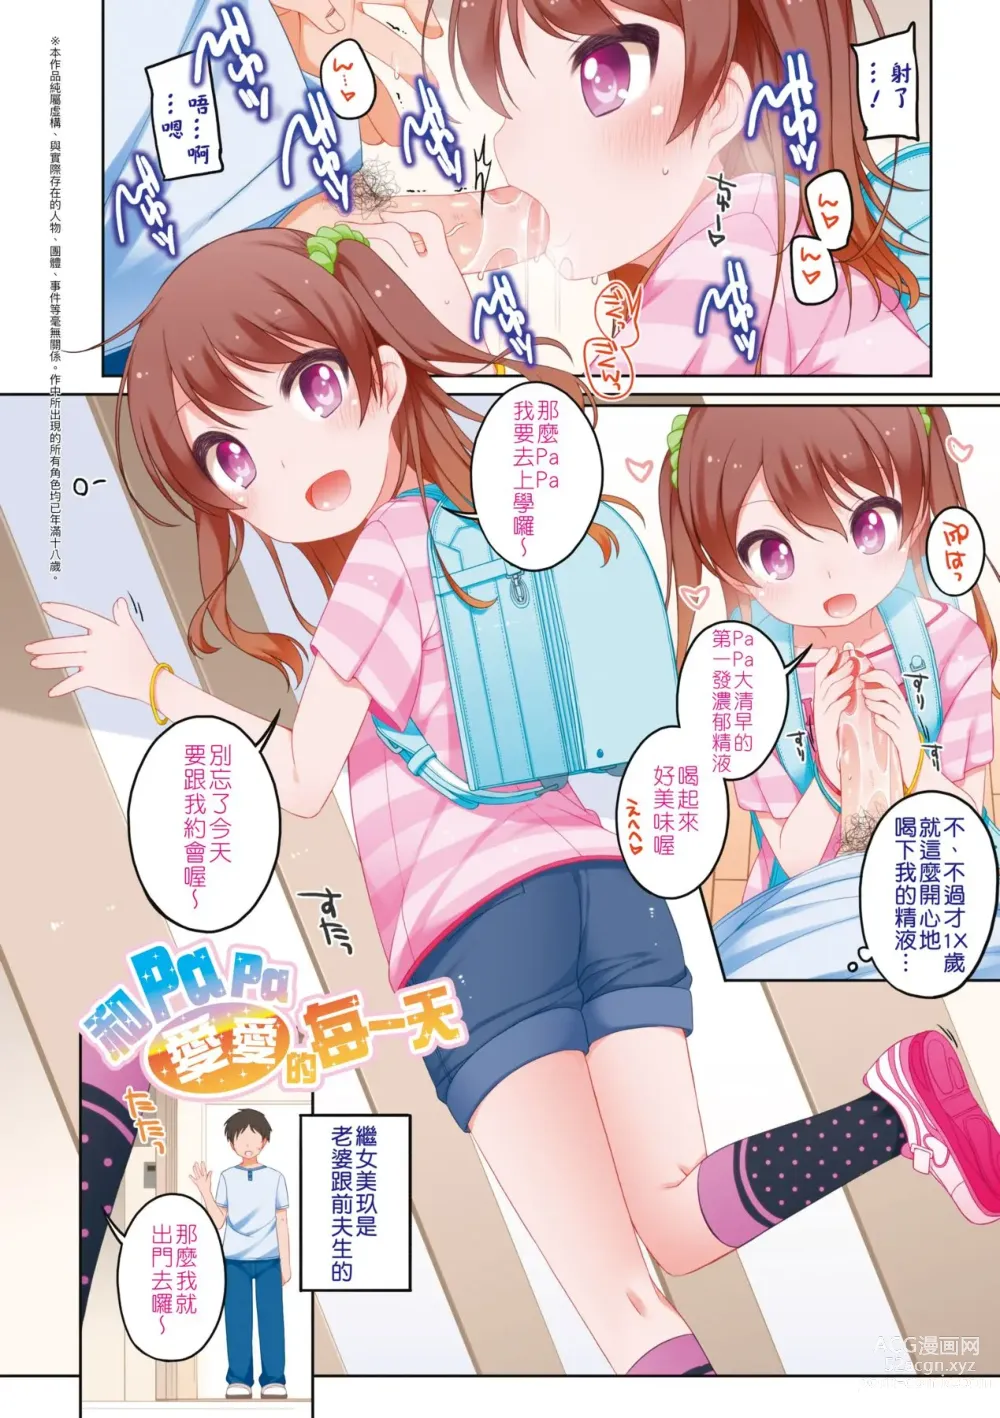 Page 7 of manga Chiisaiko Iiyone... (decensored)